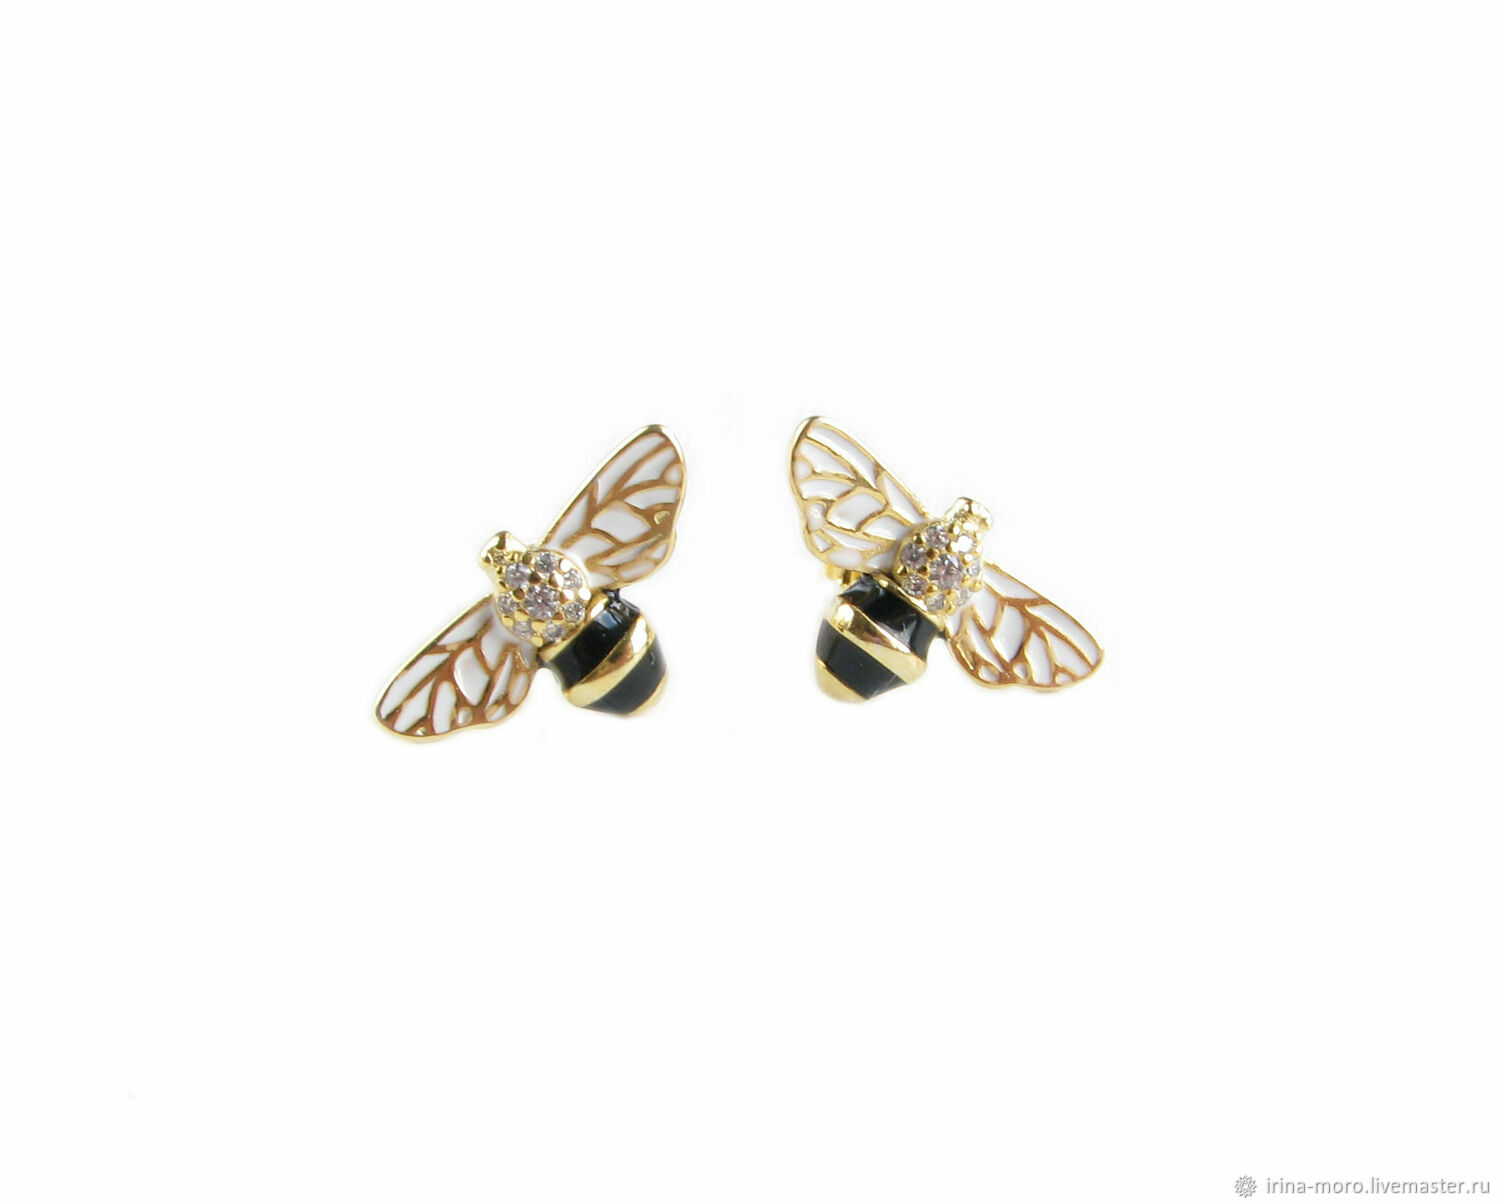 Earrings 'Bee' to buy gold earrings bees busets, Stud earrings, Moscow,  Фото №1